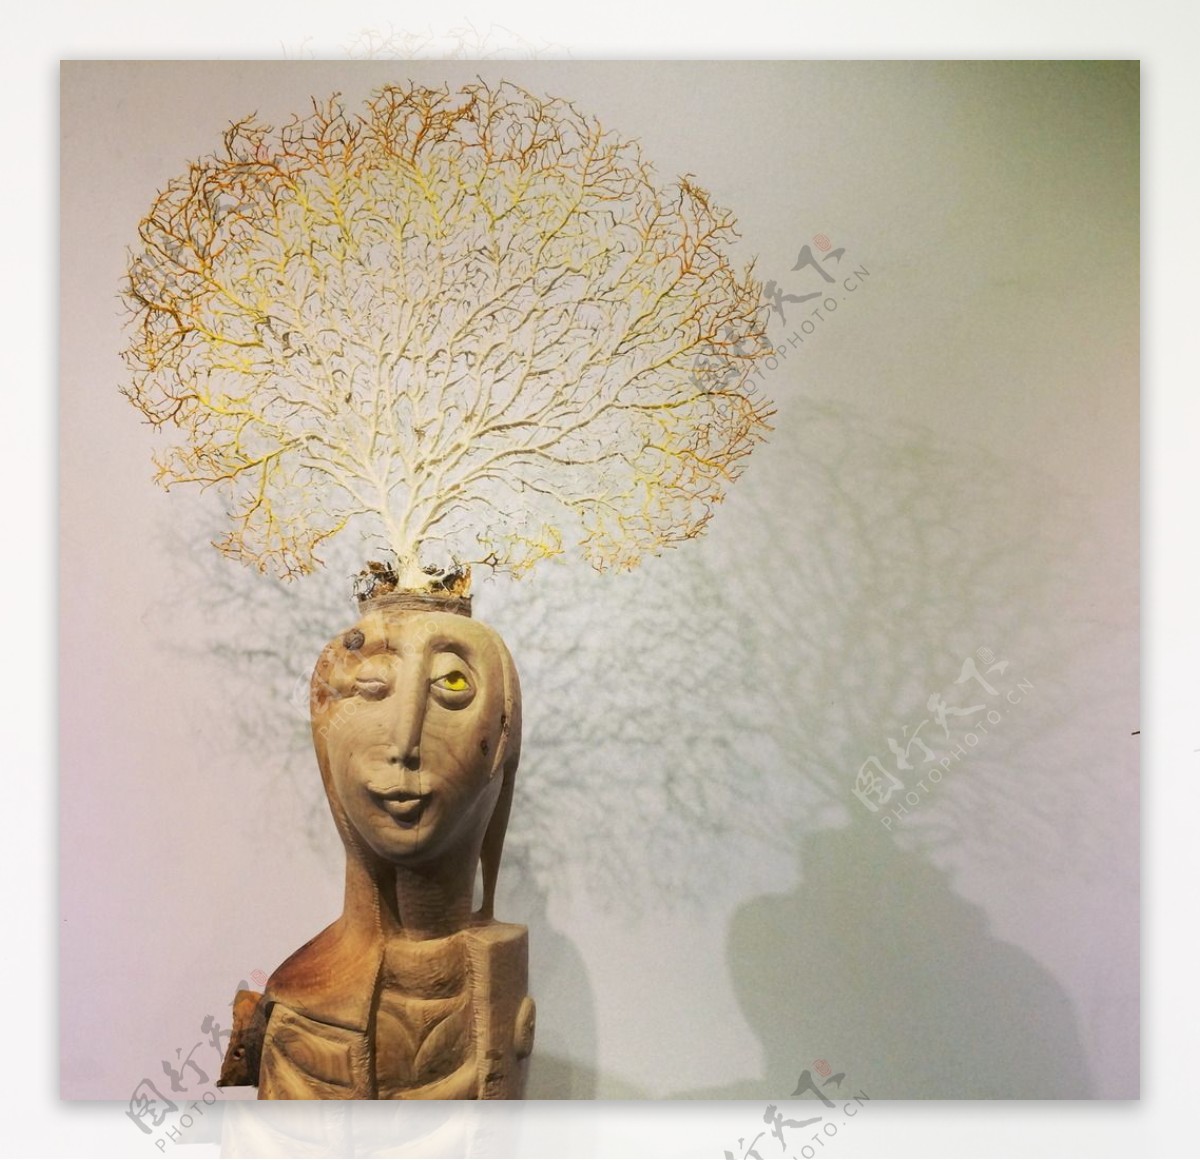 智慧之树工艺陶瓷图片